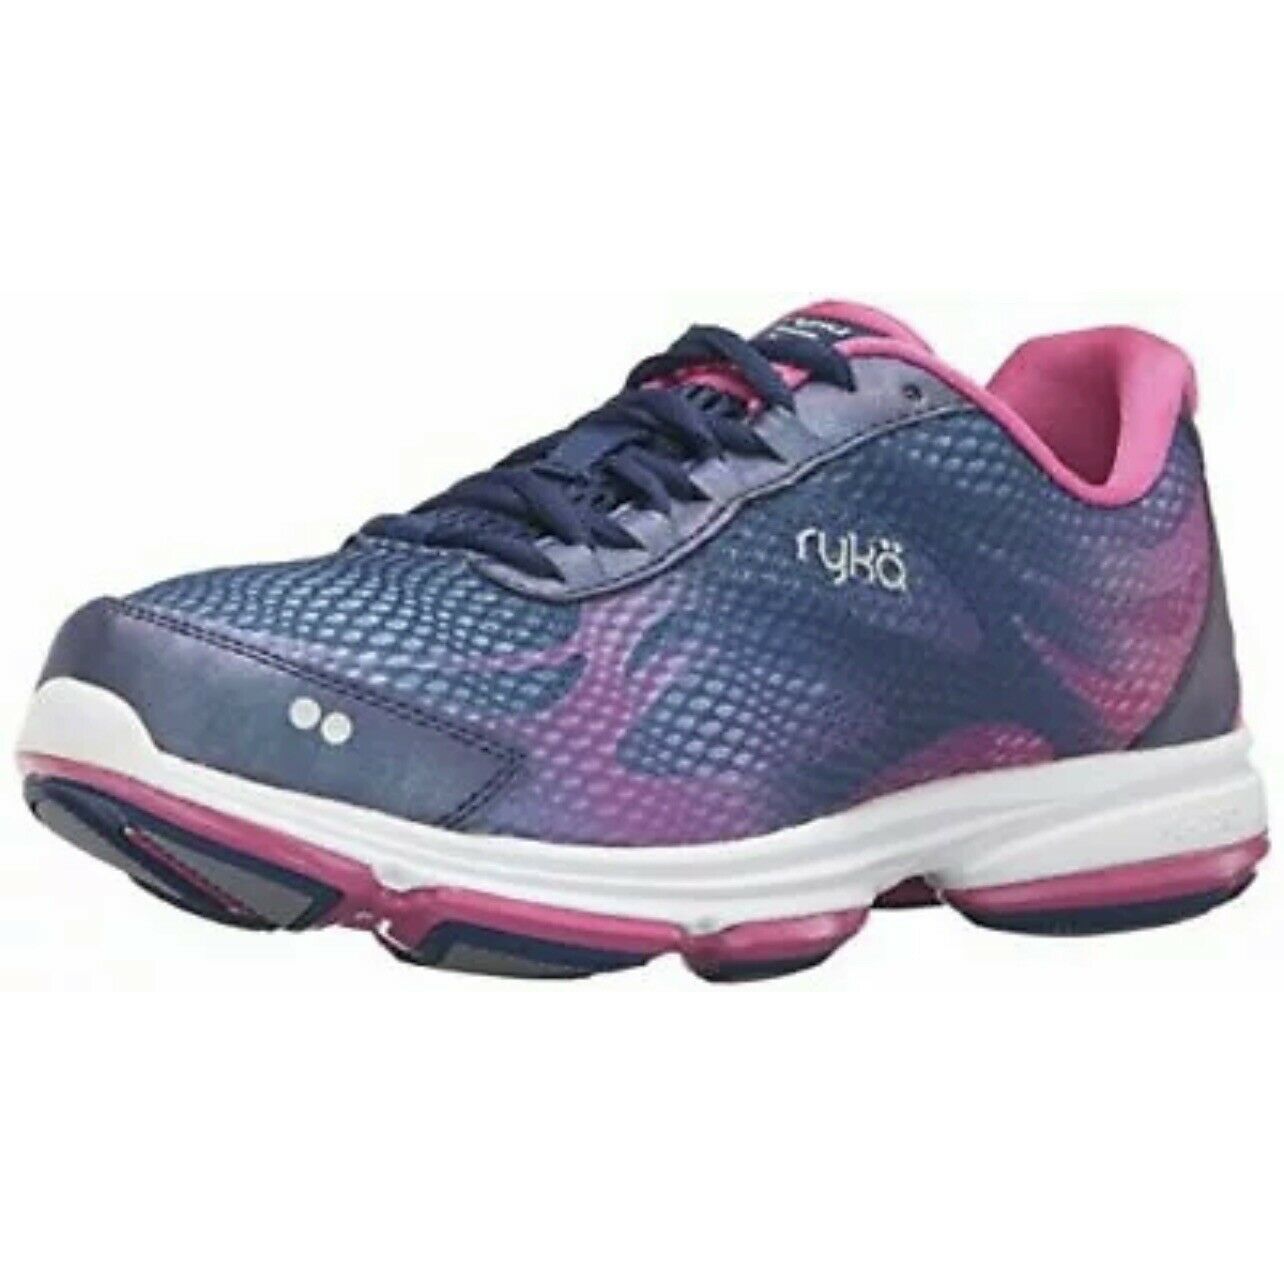 Ryka Devotion Plus 2 Walking Shoe Women's Size 10.5 M Blue Pink